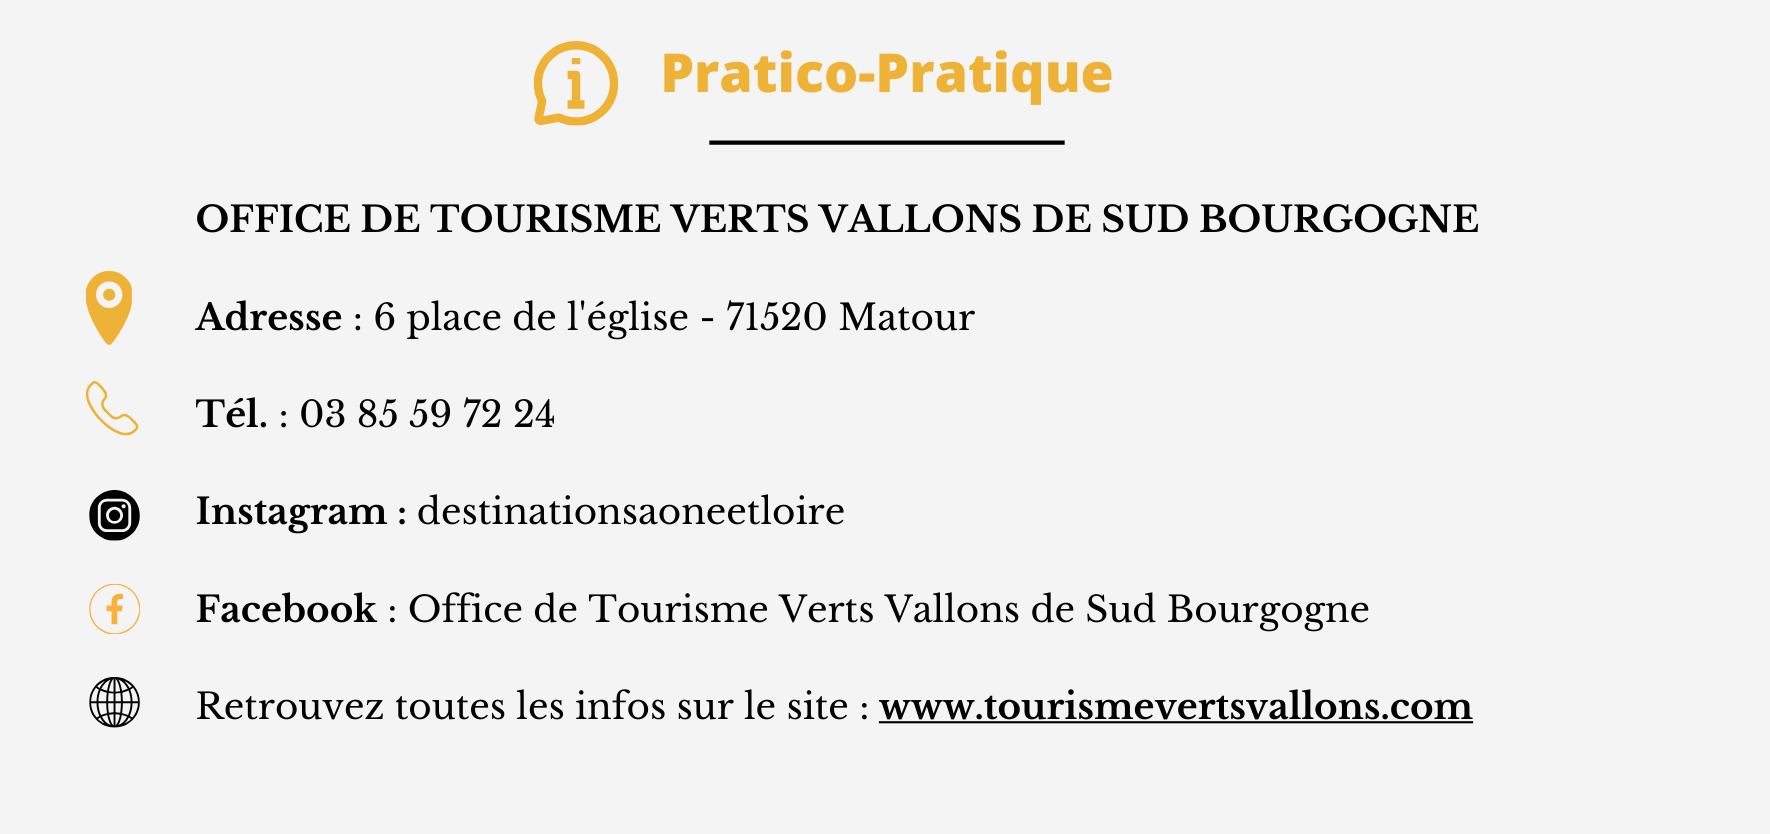 Pratico Pratique des Verts Vallons Bourgogne du Sud